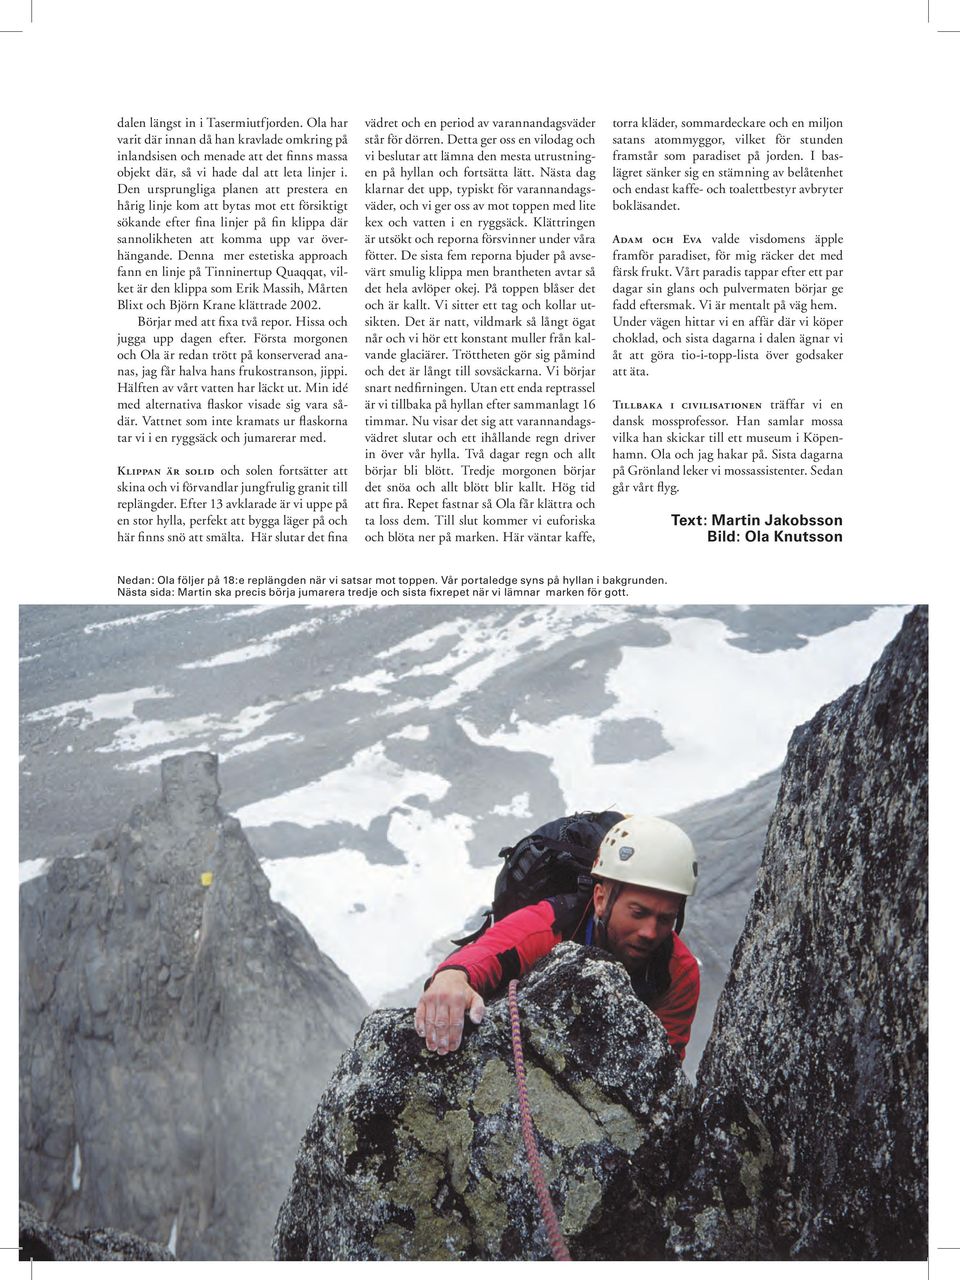 Denna mer estetiska approach fann en linje på Tinninertup Quaqqat, vilket är den klippa som Erik Massih, Mårten Blixt och Björn Krane klättrade 2002. Börjar med att fixa två repor.